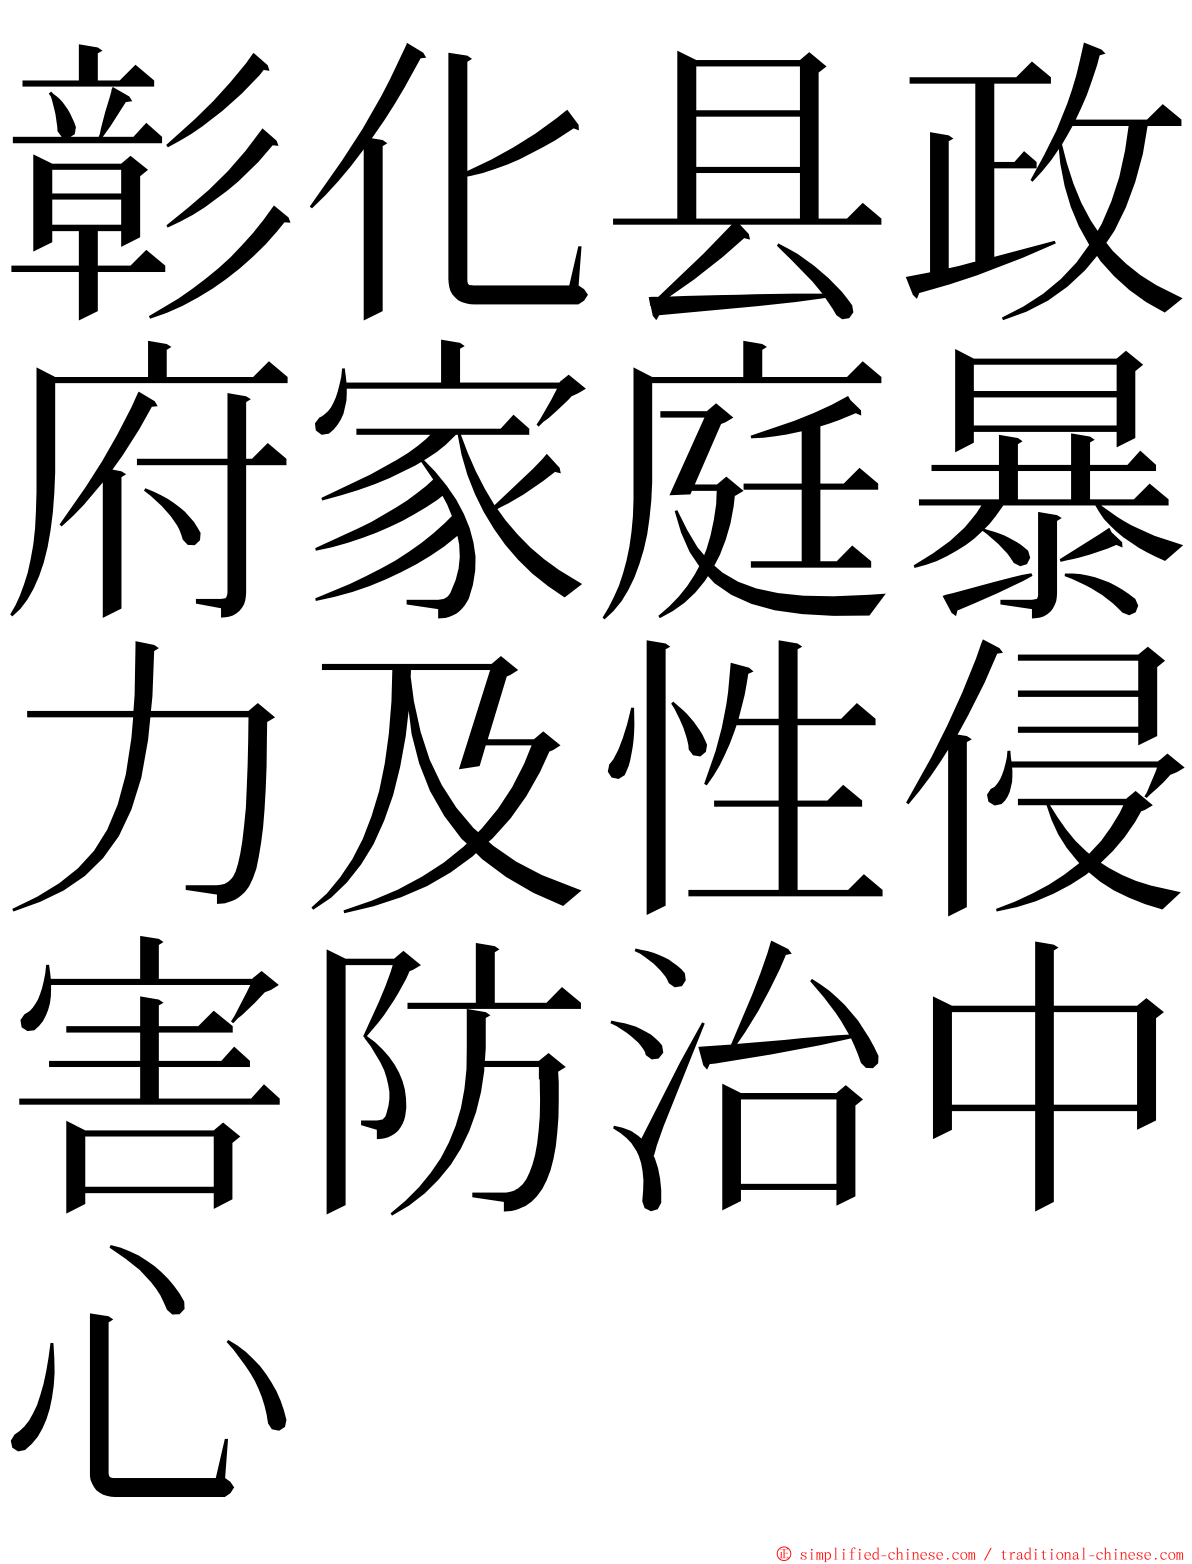 彰化县政府家庭暴力及性侵害防治中心 ming font